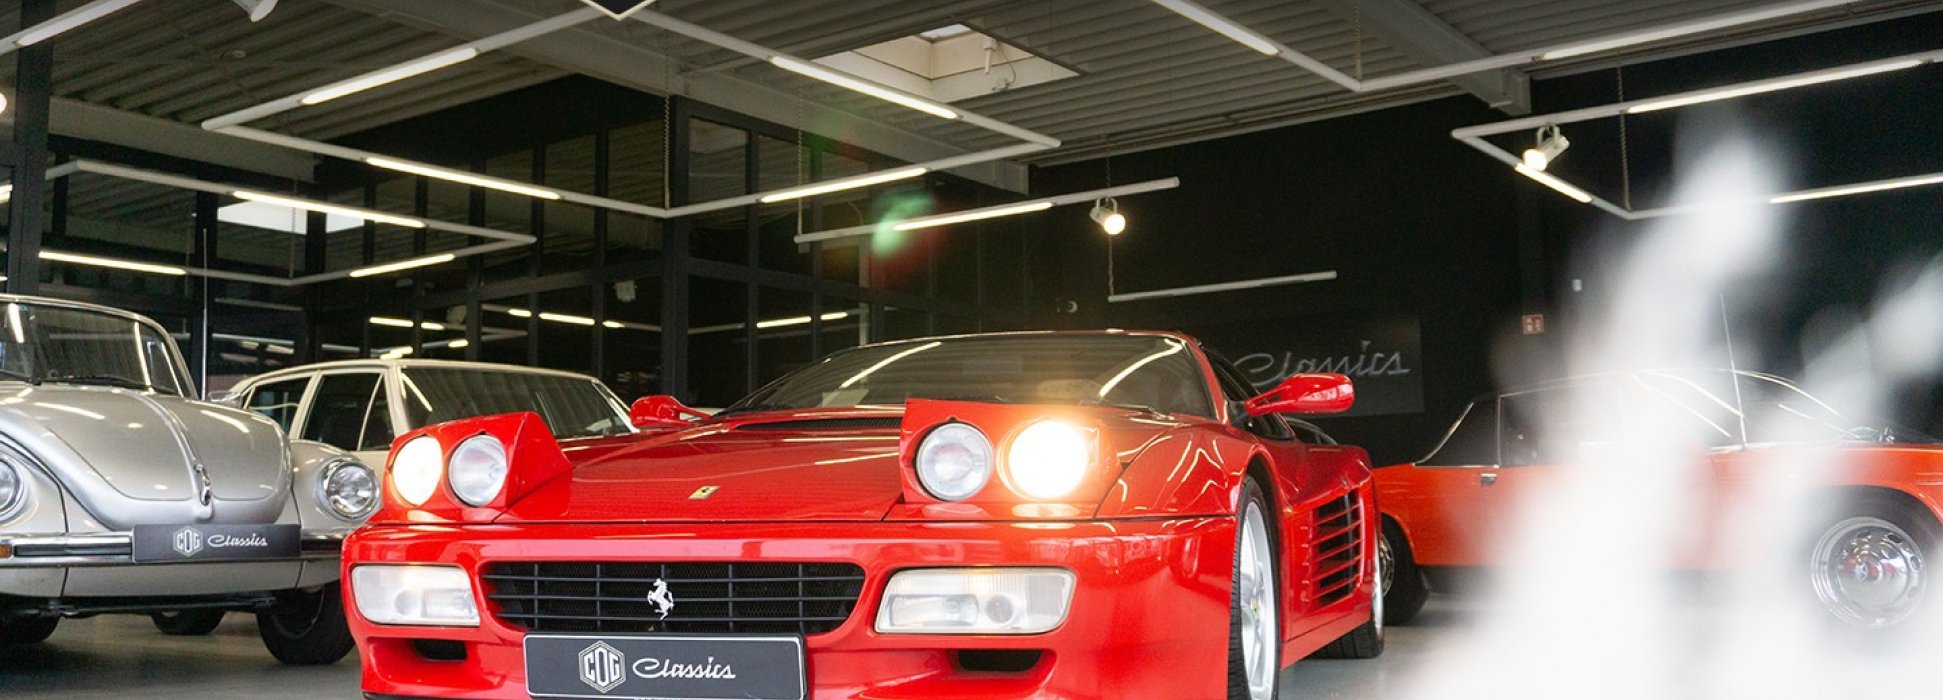 Ferrari 512 TR 5